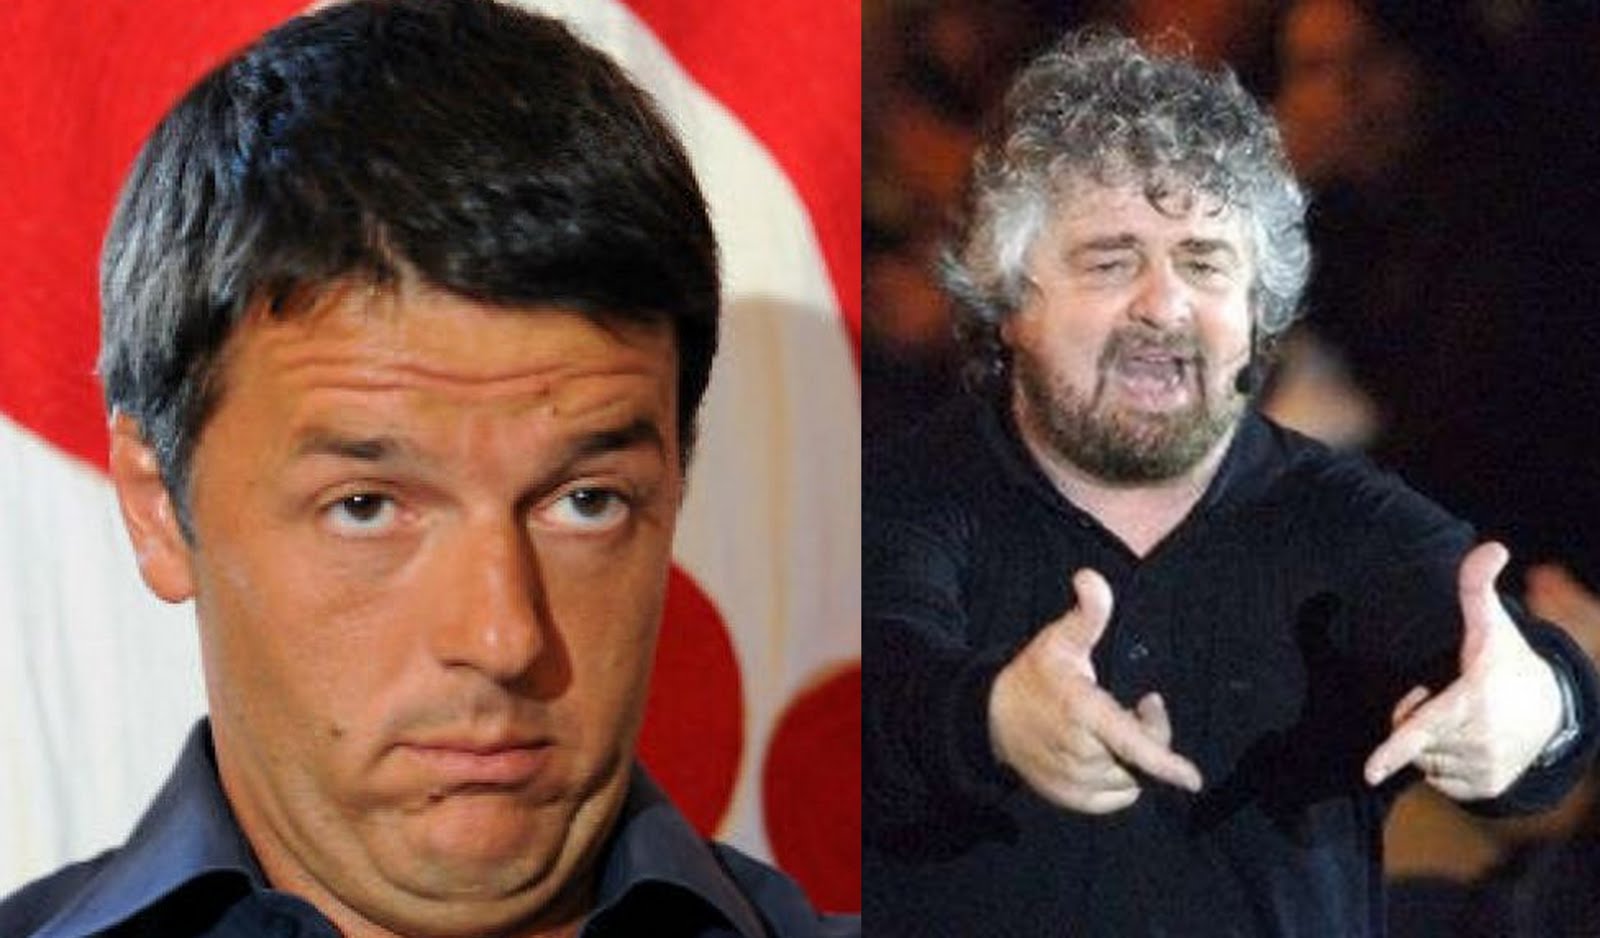  Ballottaggi, segretari e ministri per Cosentini: ma arrivano anche Matteo Renzi e Beppe Grillo